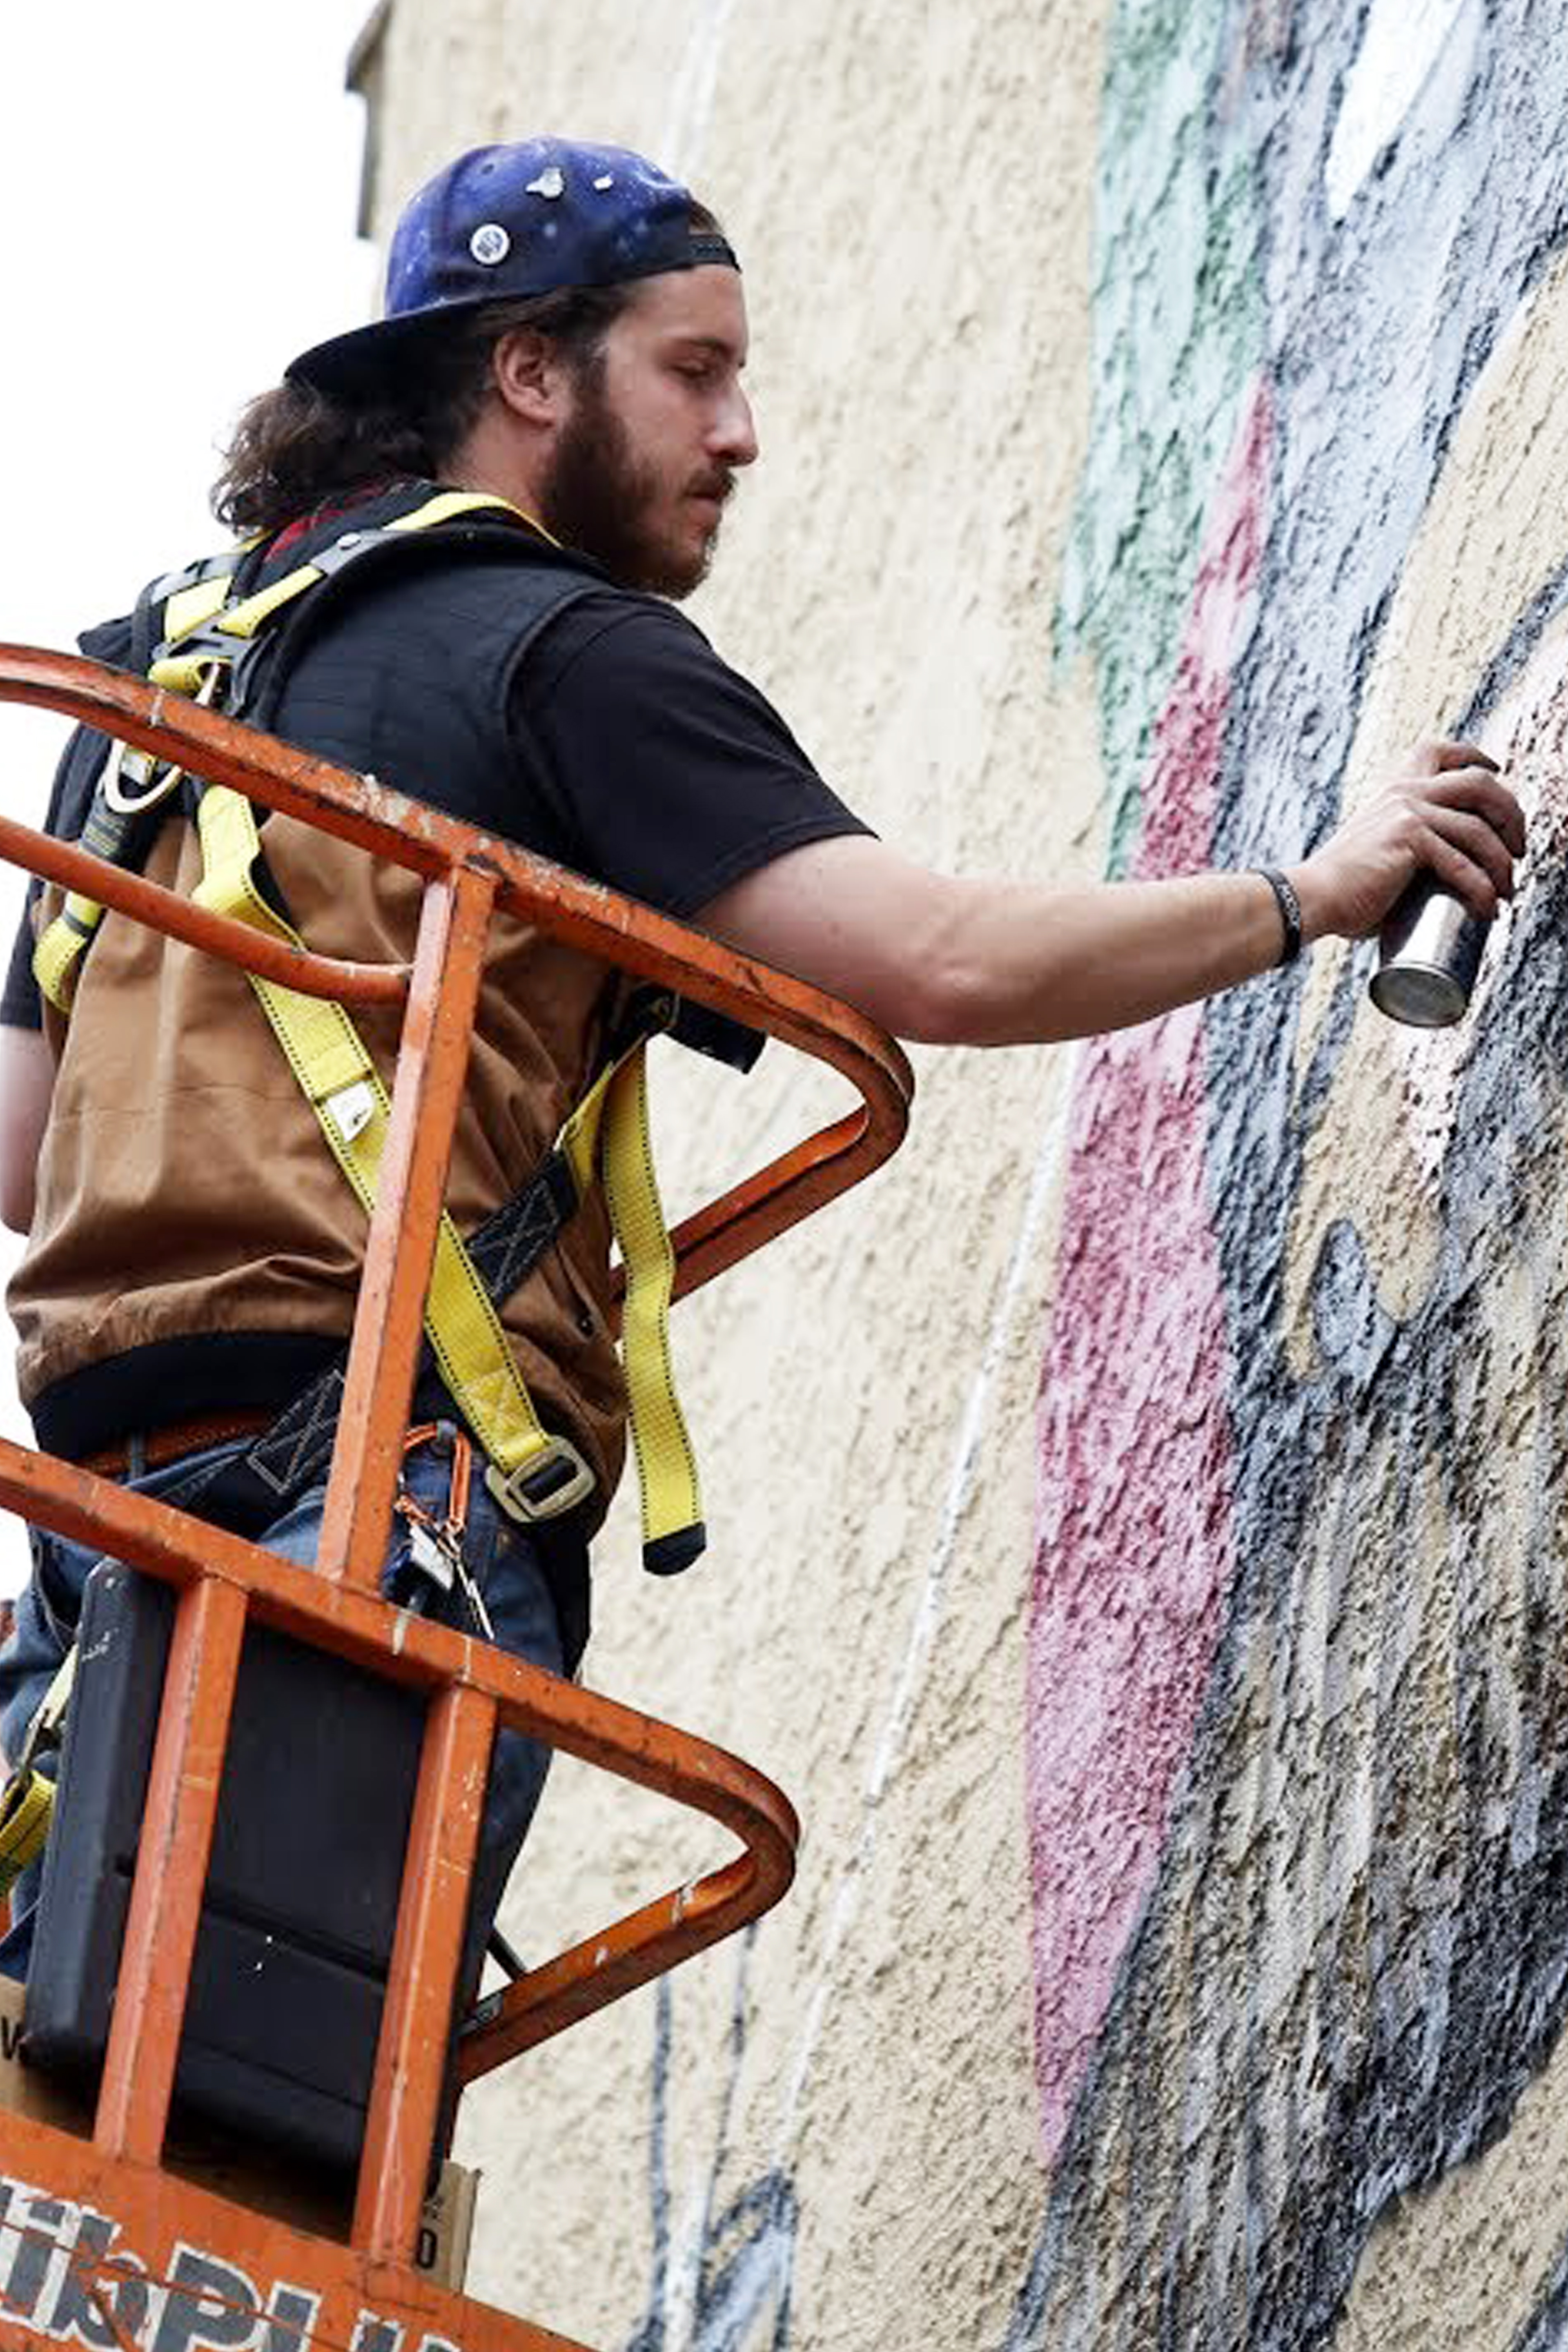 man painting mural